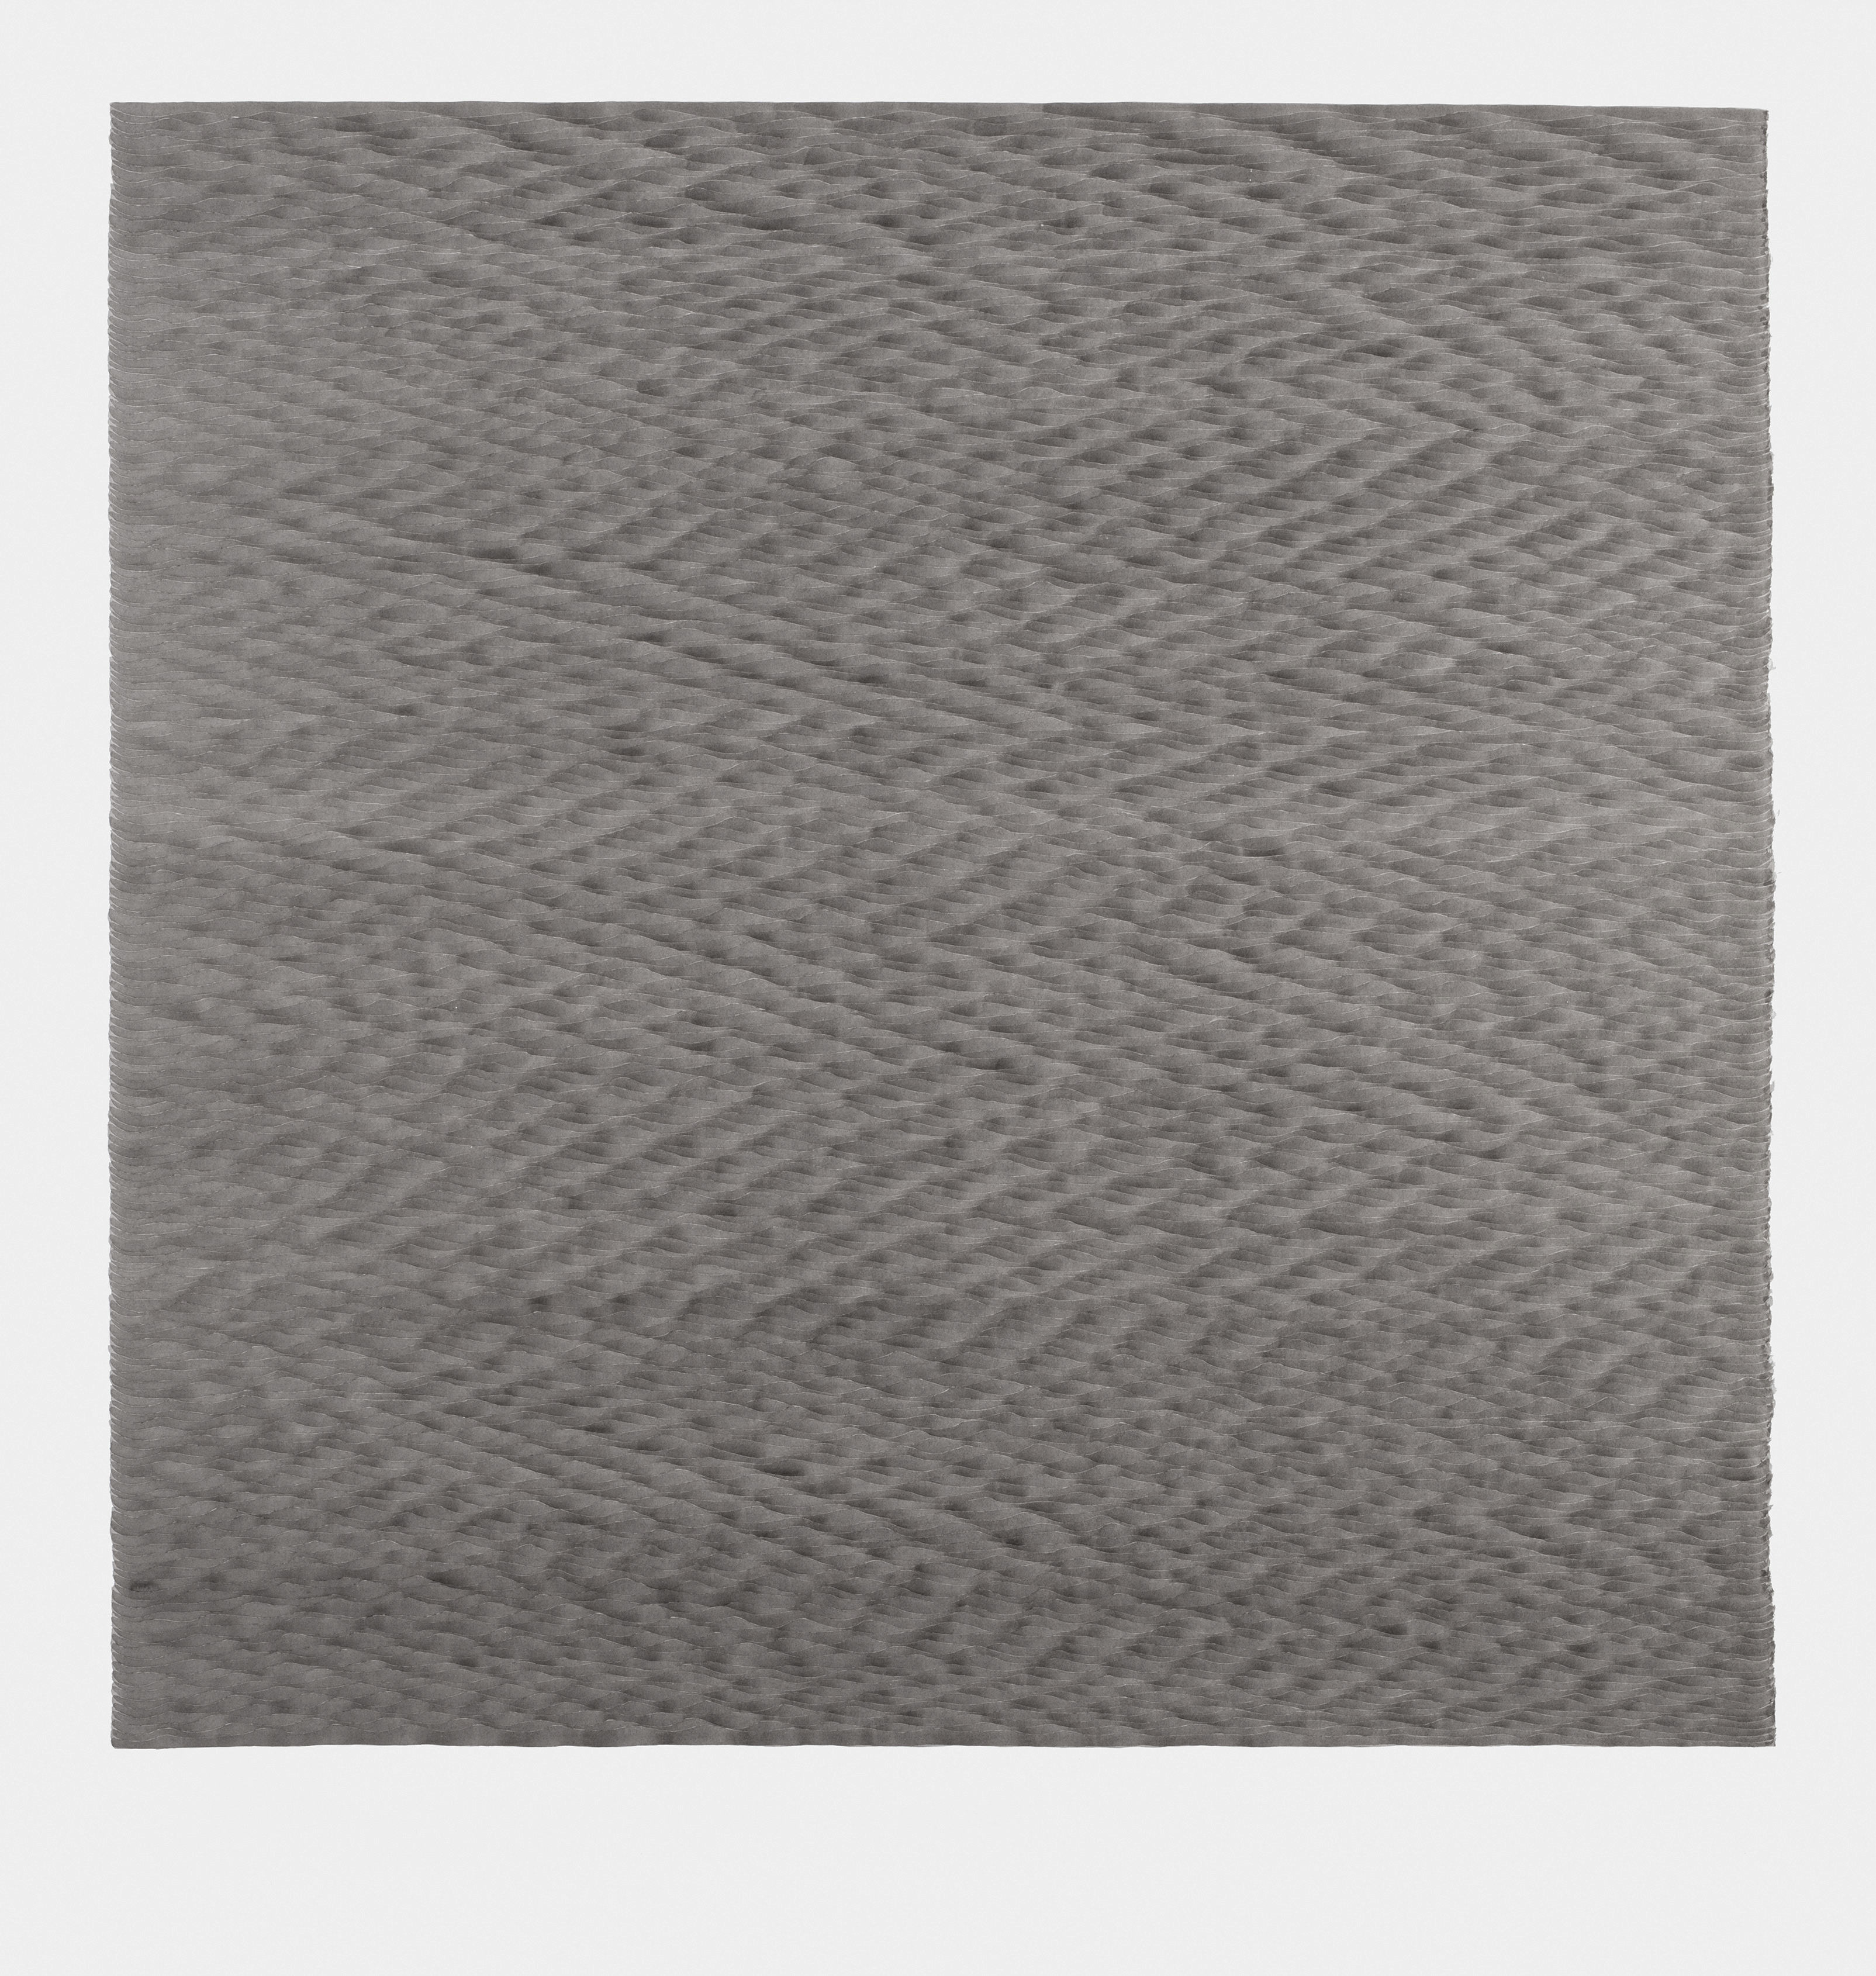 LUISE VON ROHDEN Wellen (hh d/wr 109/0), 2018, Tusche auf Papier, 78 x 58 cm, Foto: Thomas Bruns